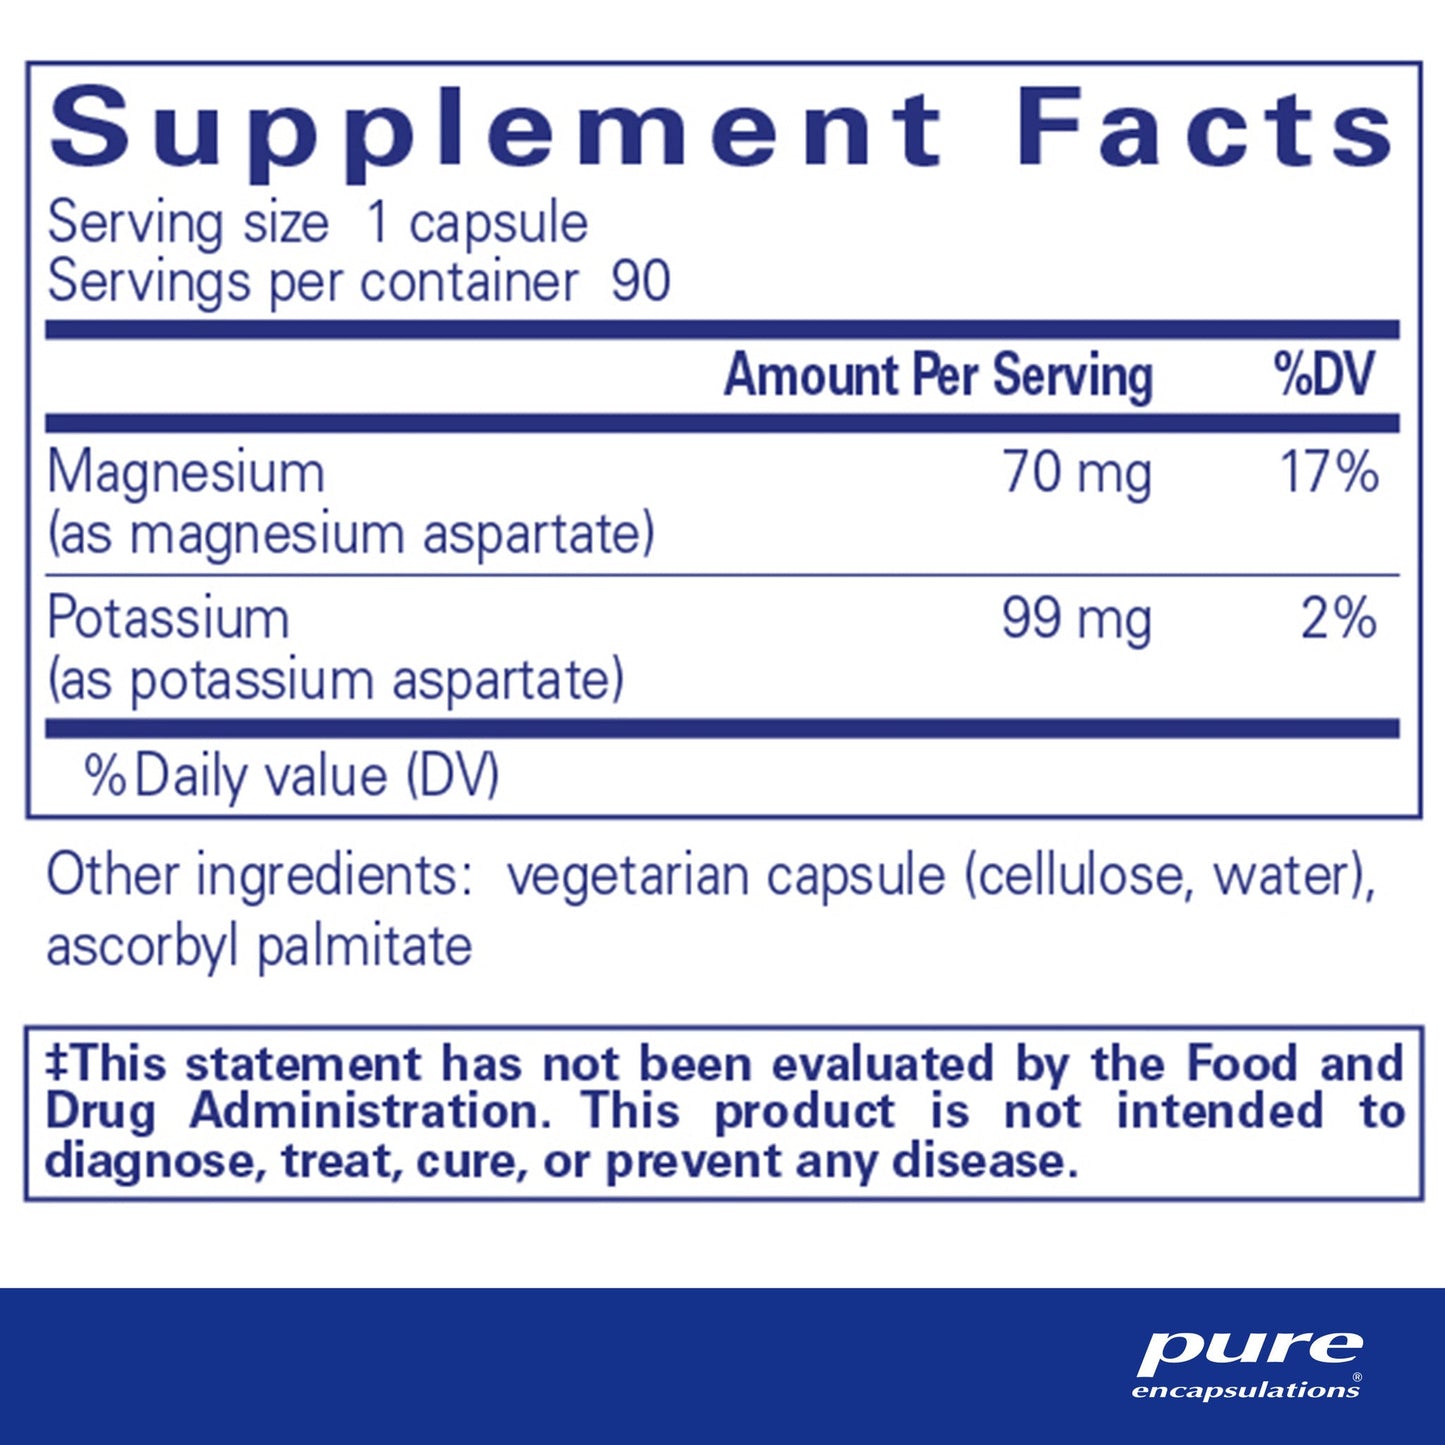 Potassium/Magnesium (aspartate)